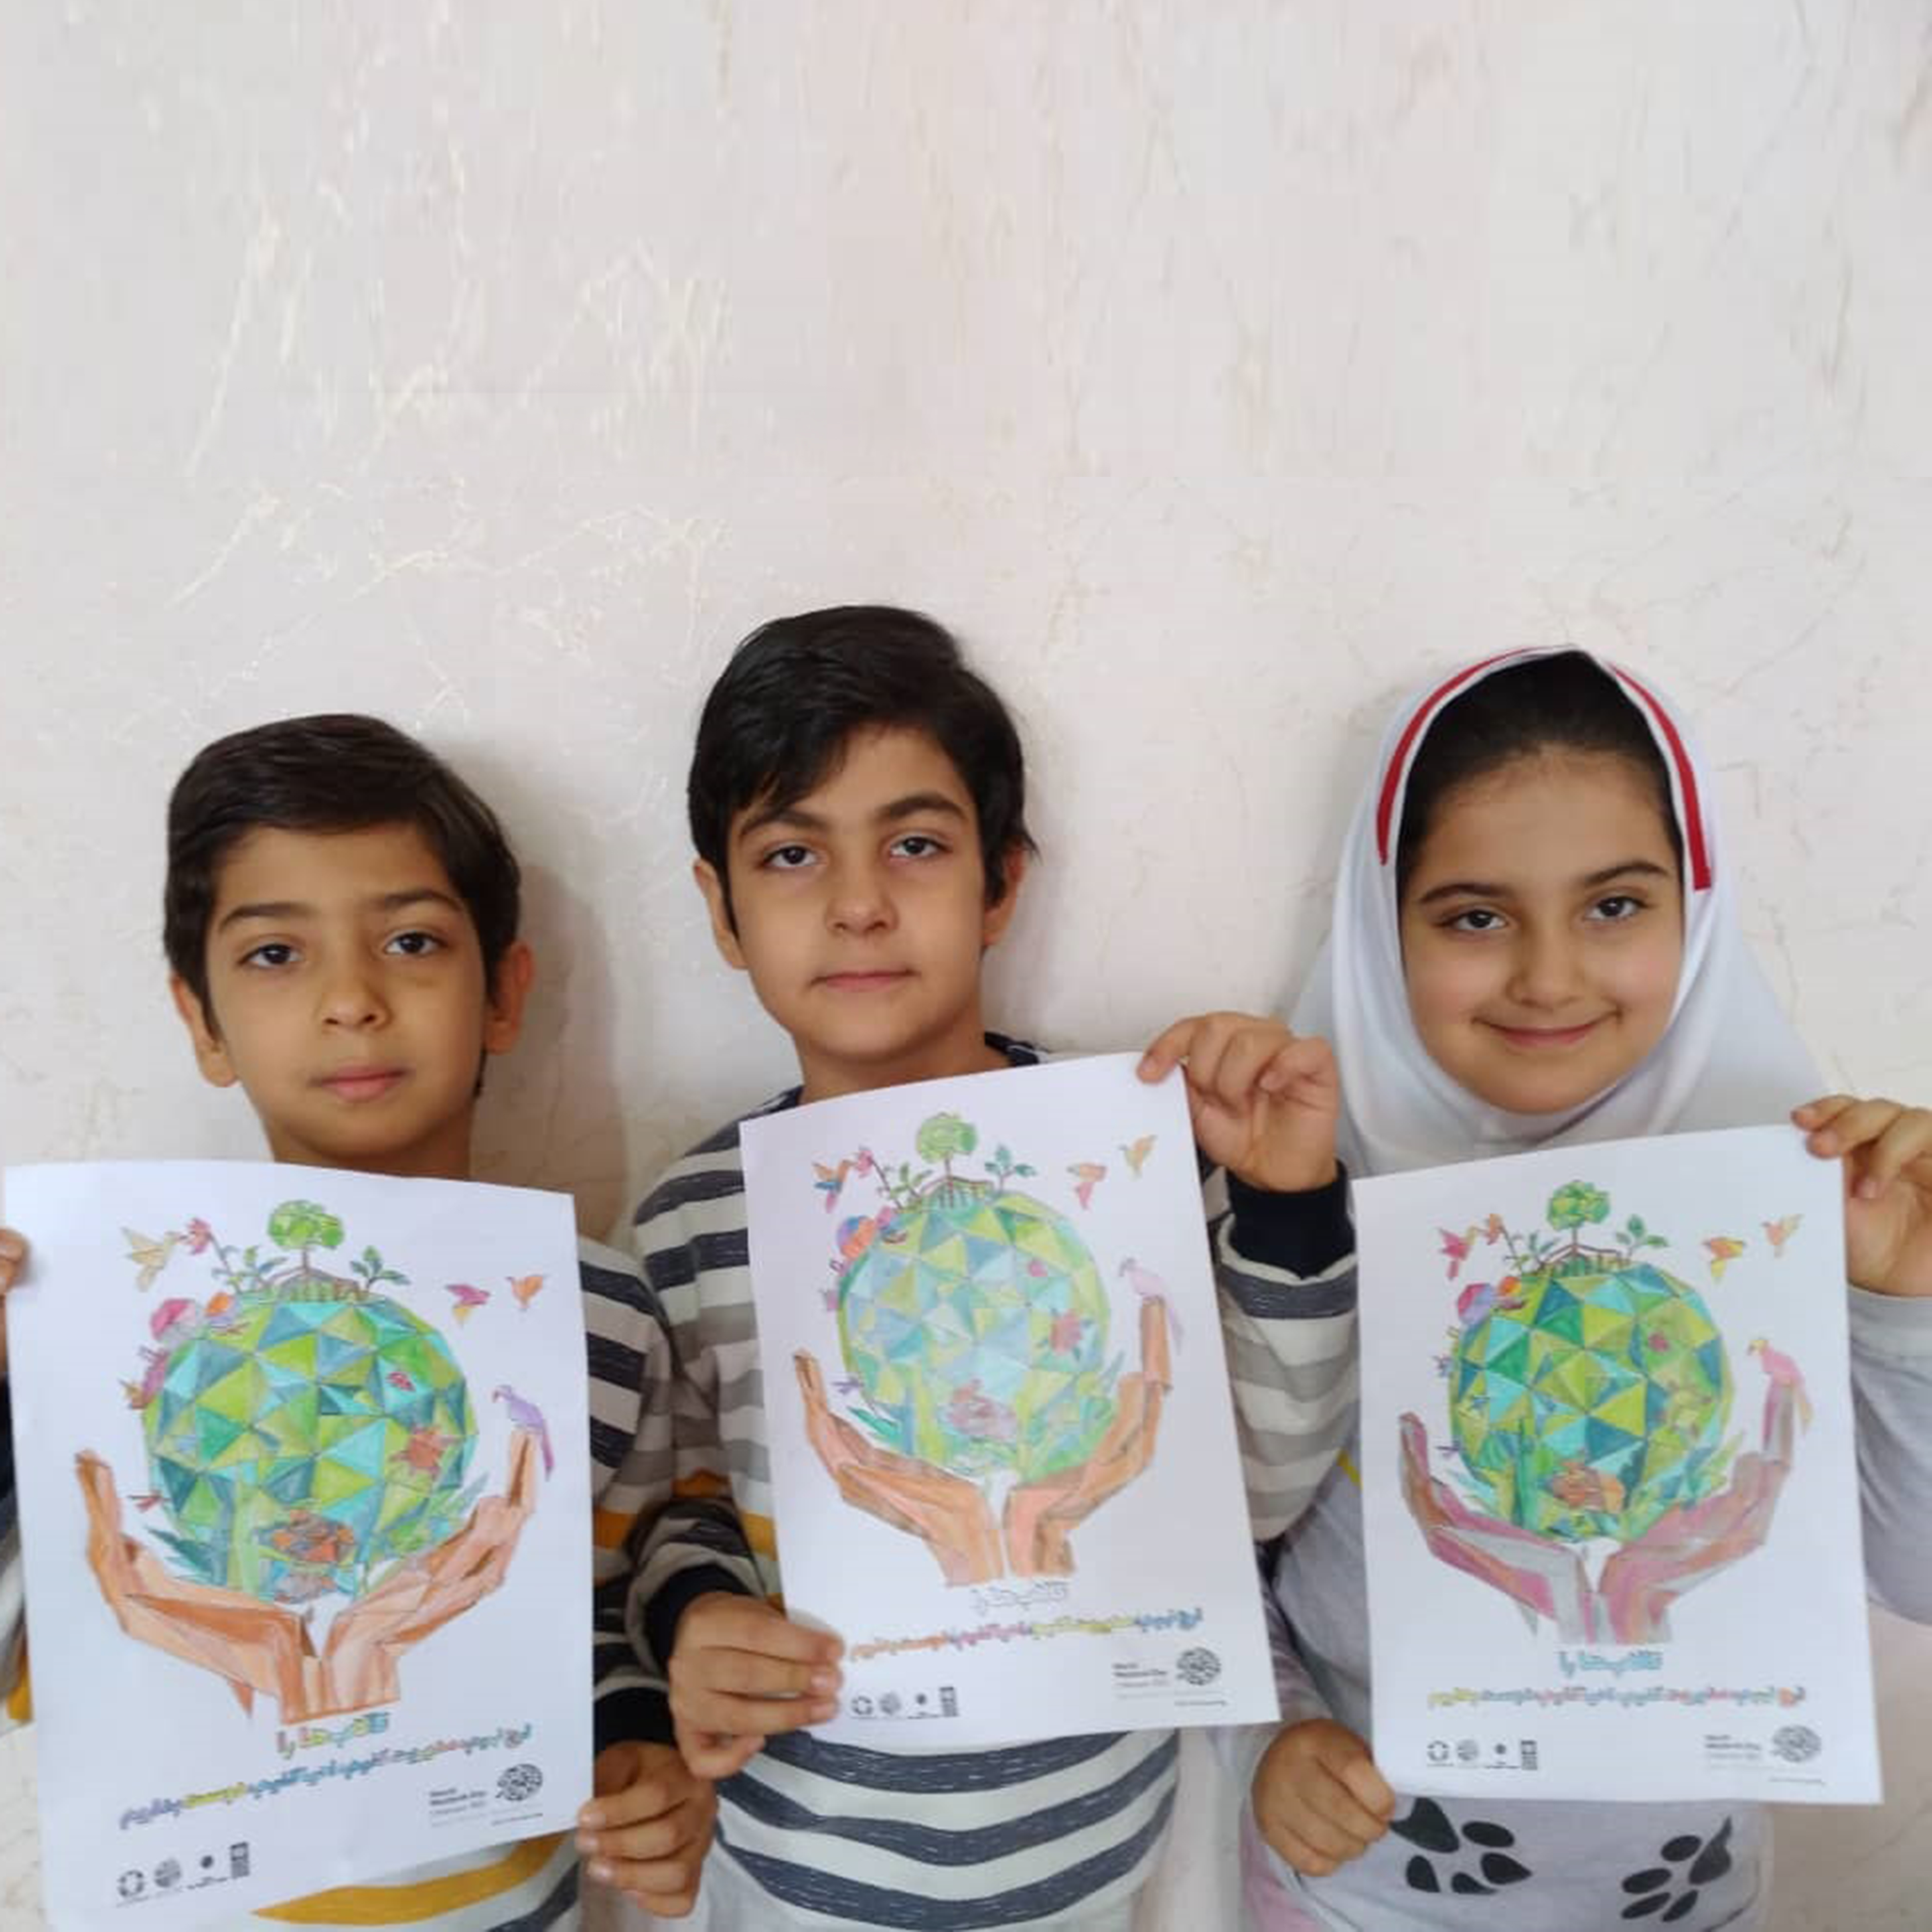 پوستر بین المللی روز جهانی تالاب ها توسط کودکان ایرانی رنگ آمیزی شد